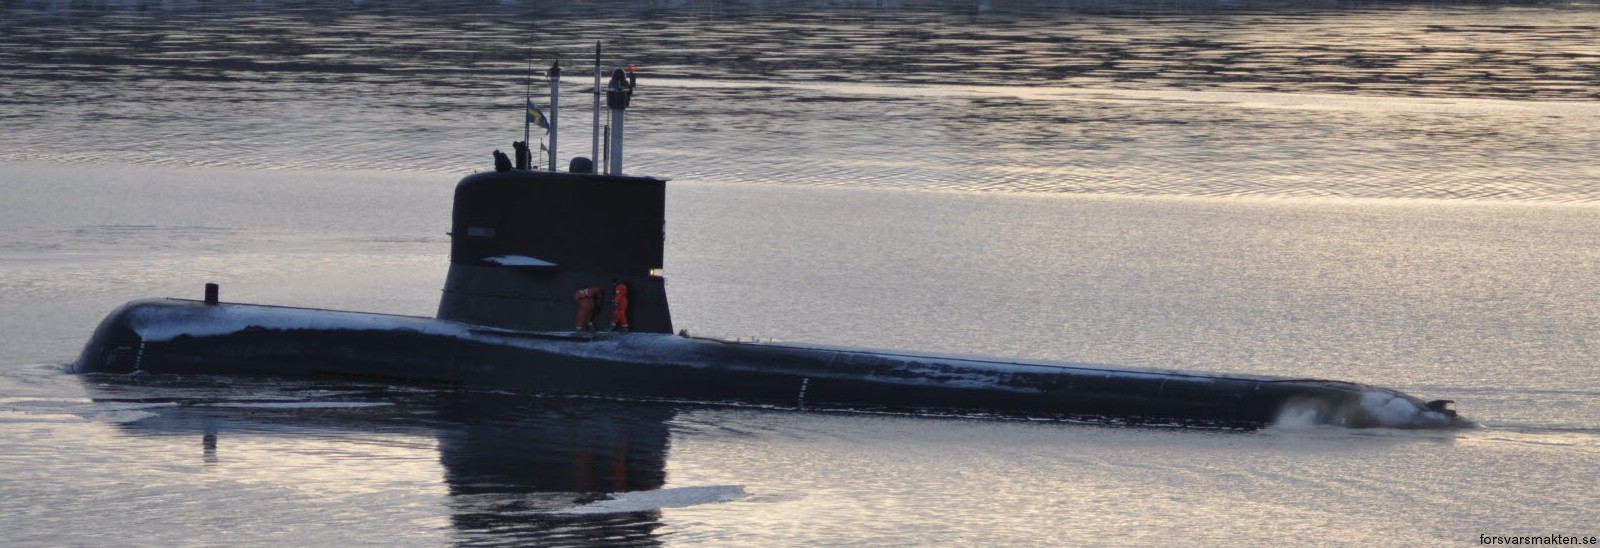 hswms hms sodermanland söd vastergotland class submarine ssk swedish navy svenska marinen försvarsmakten kockums 04